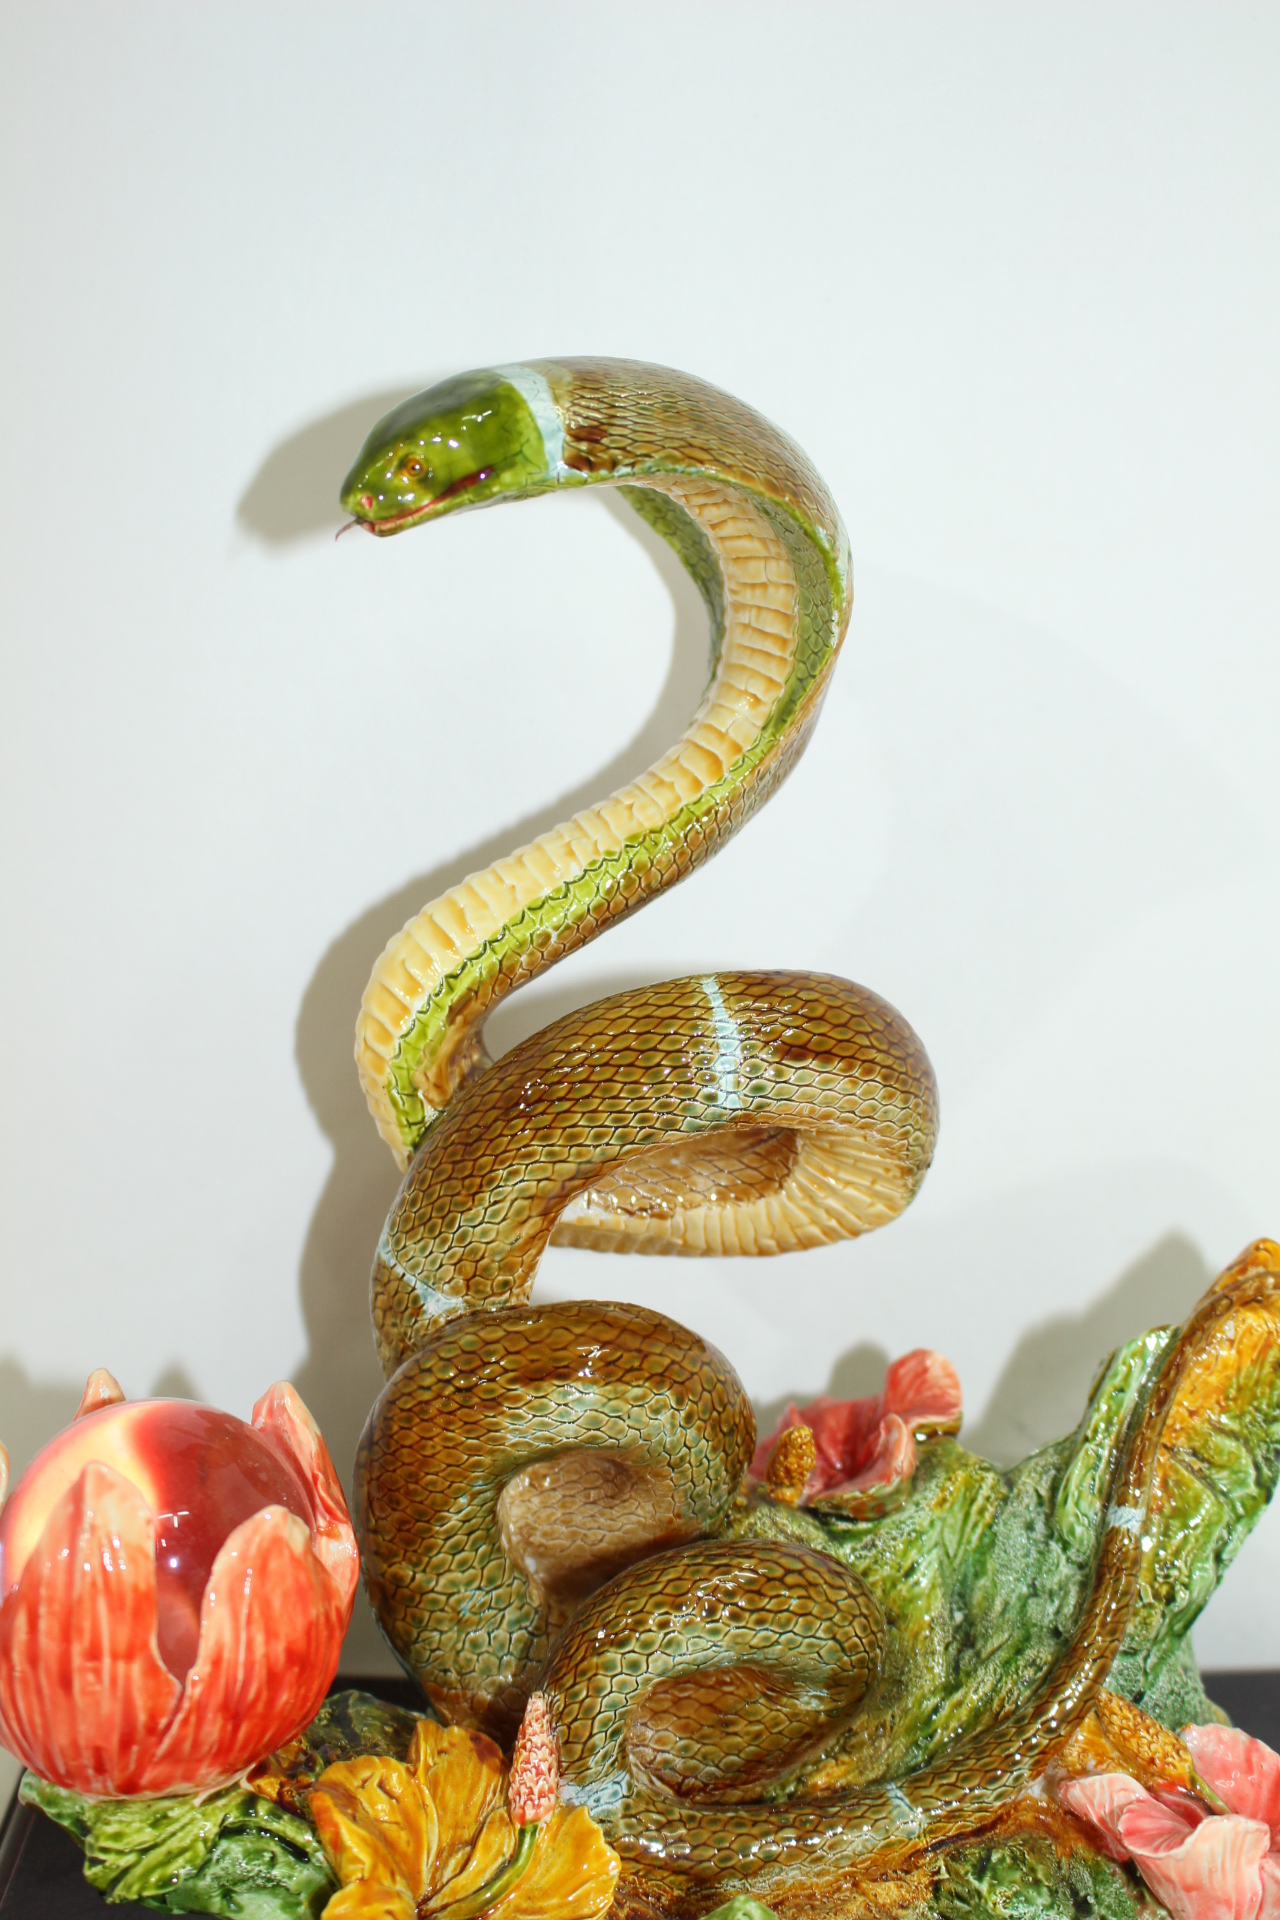 청자 코브라 뱀 조각상